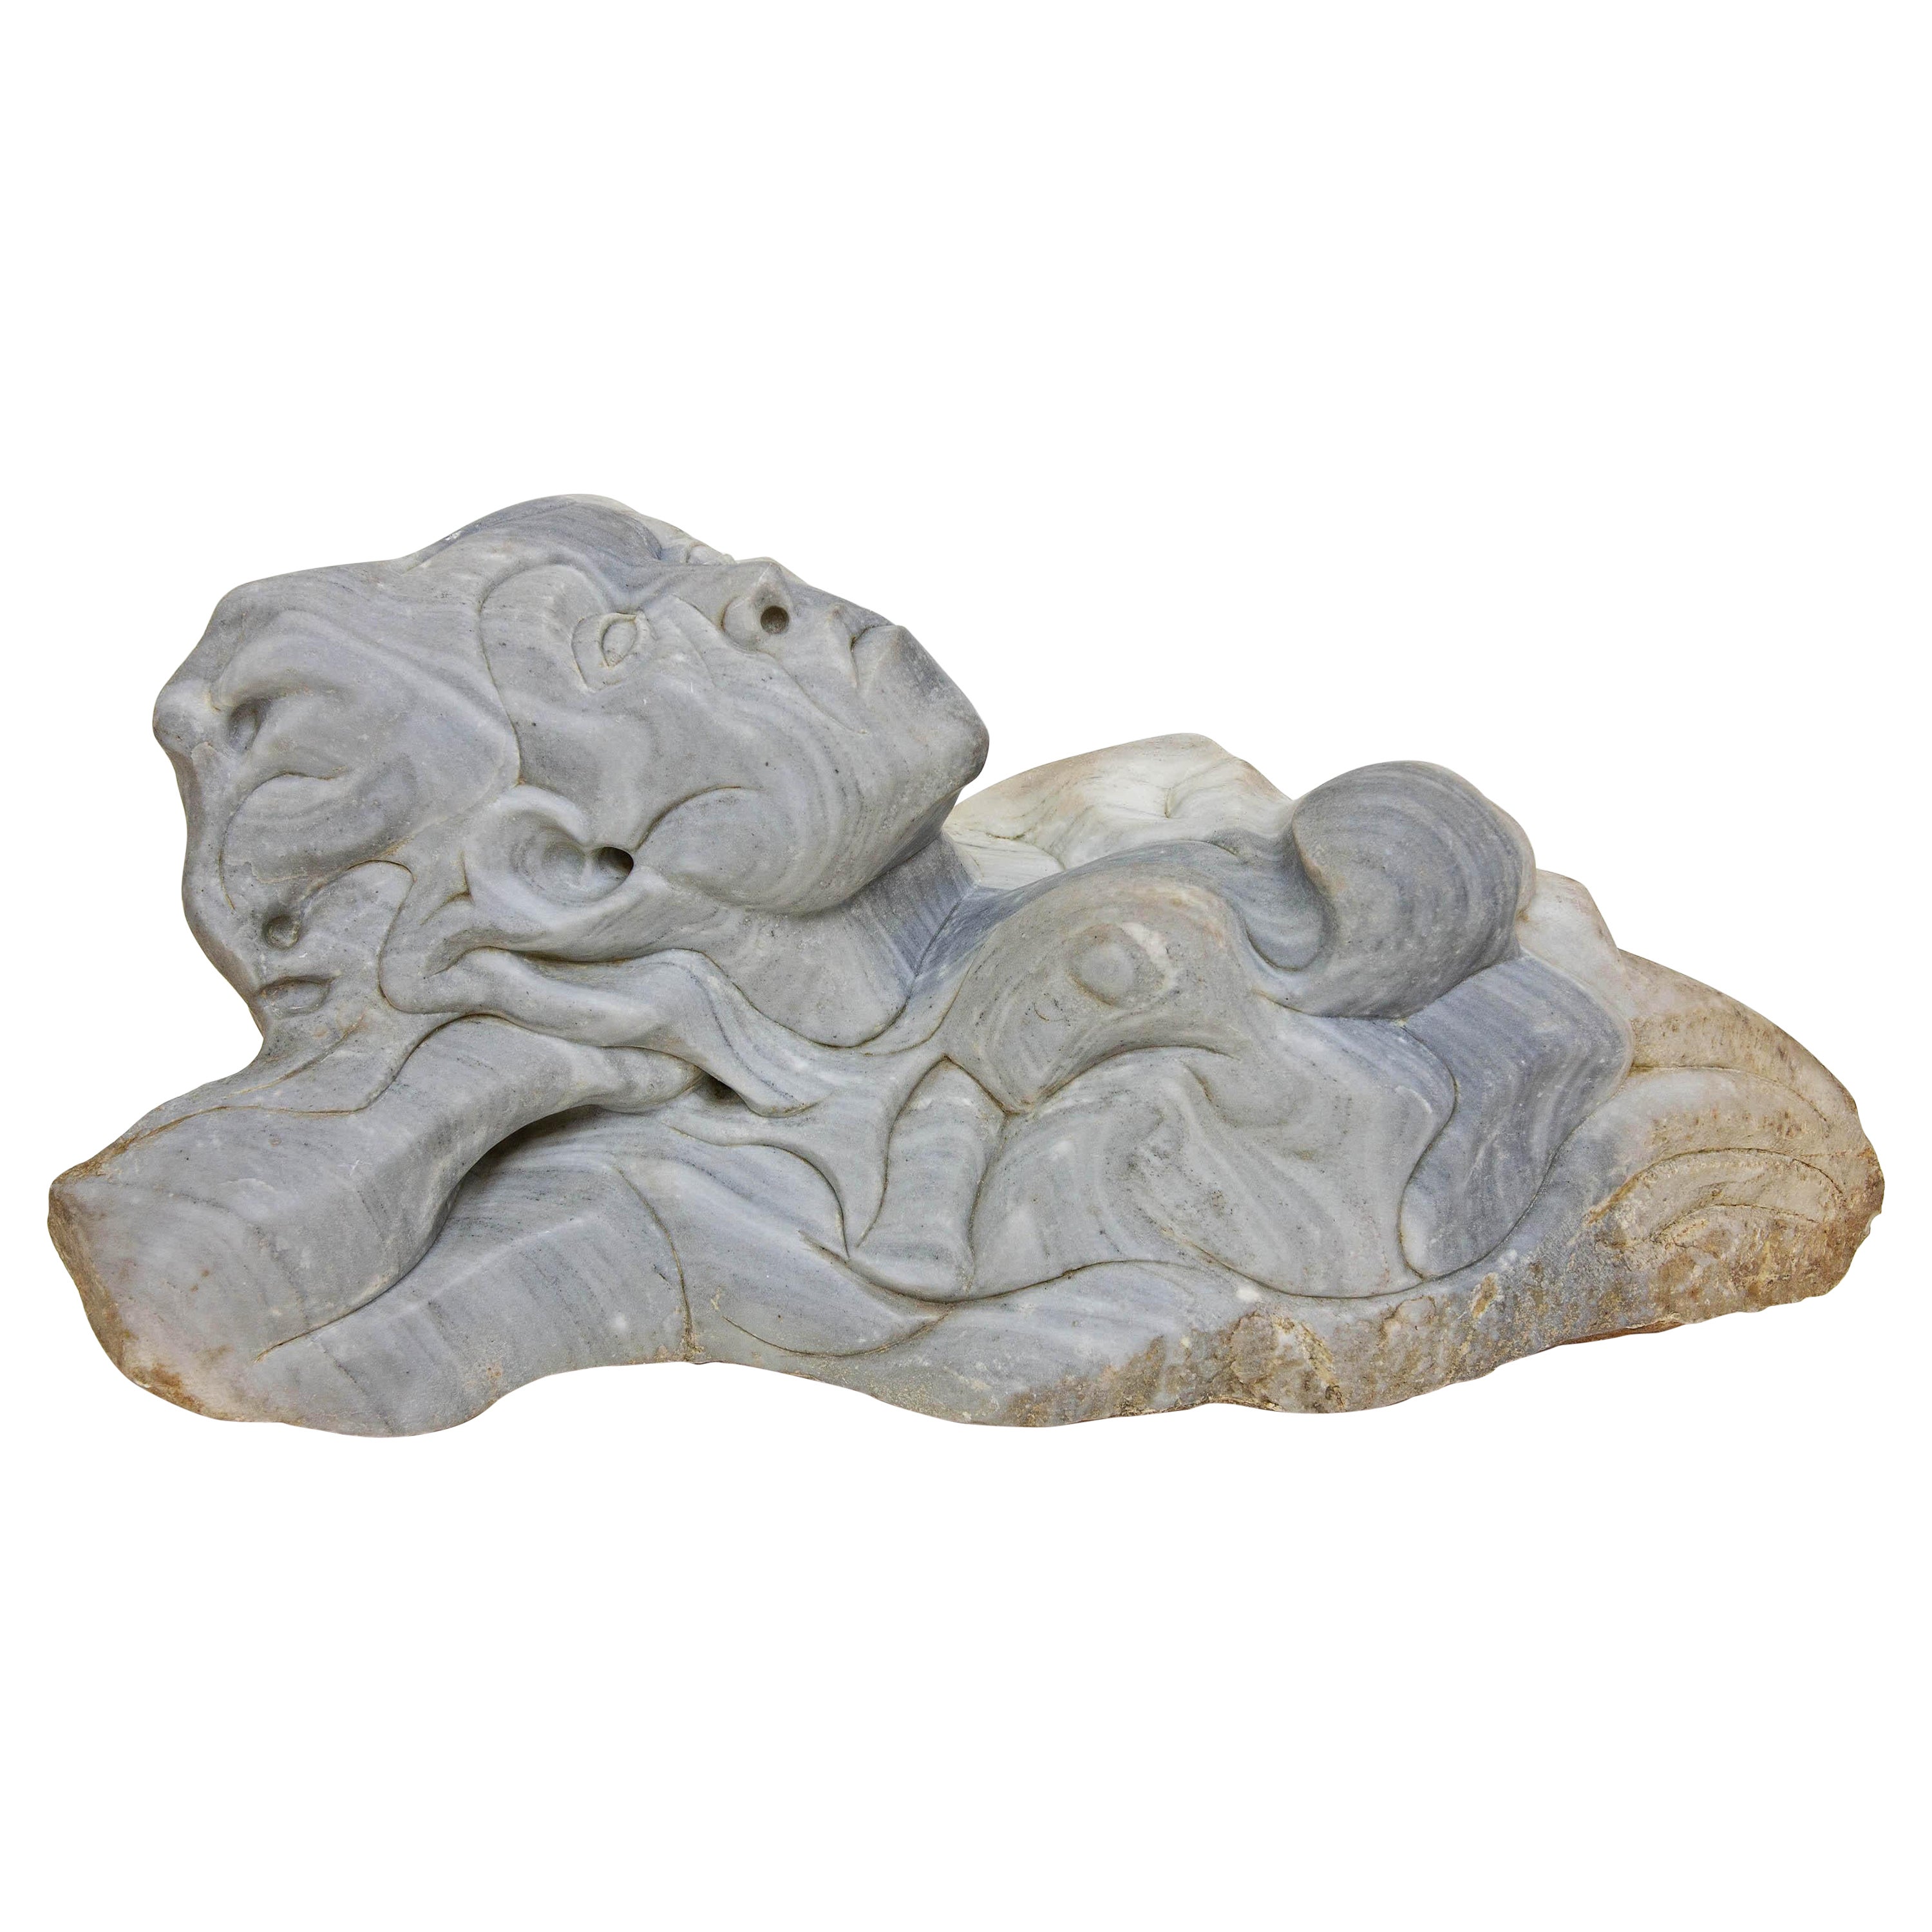 Sculpture moderniste sculptée de figure mythique en grès sculpté 